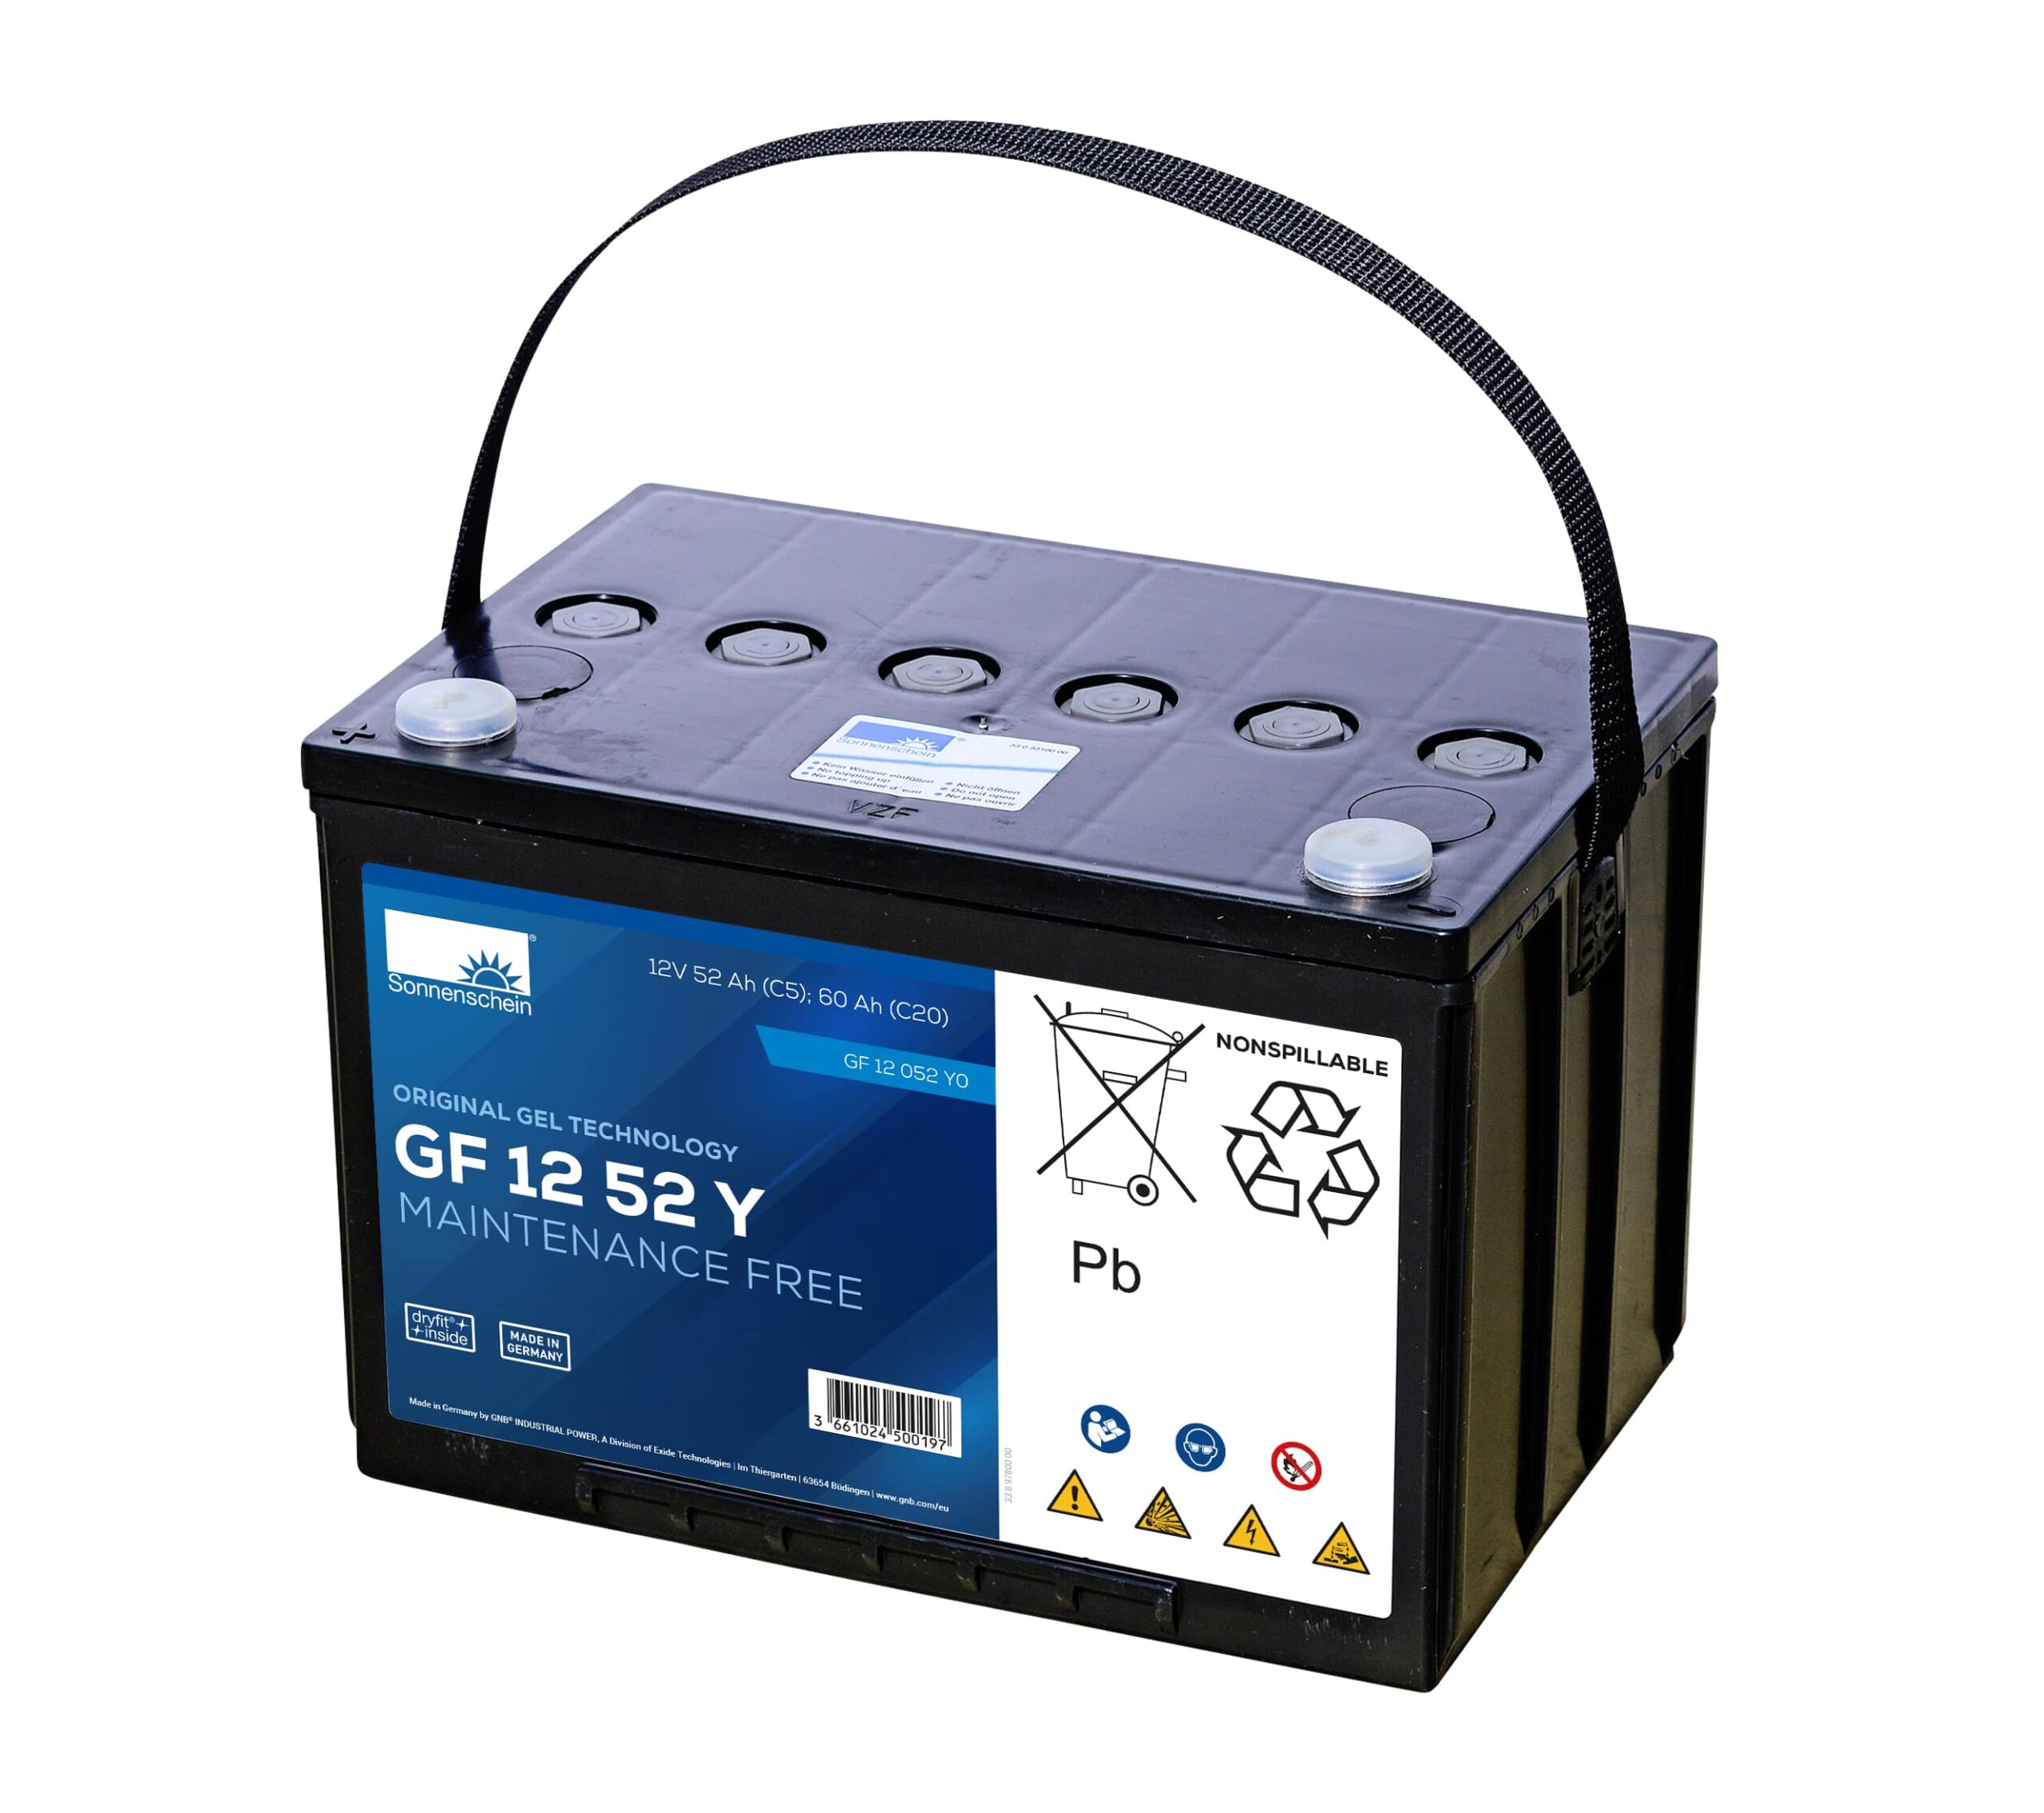 Batterie GF 12 044 Y Sonnenschein